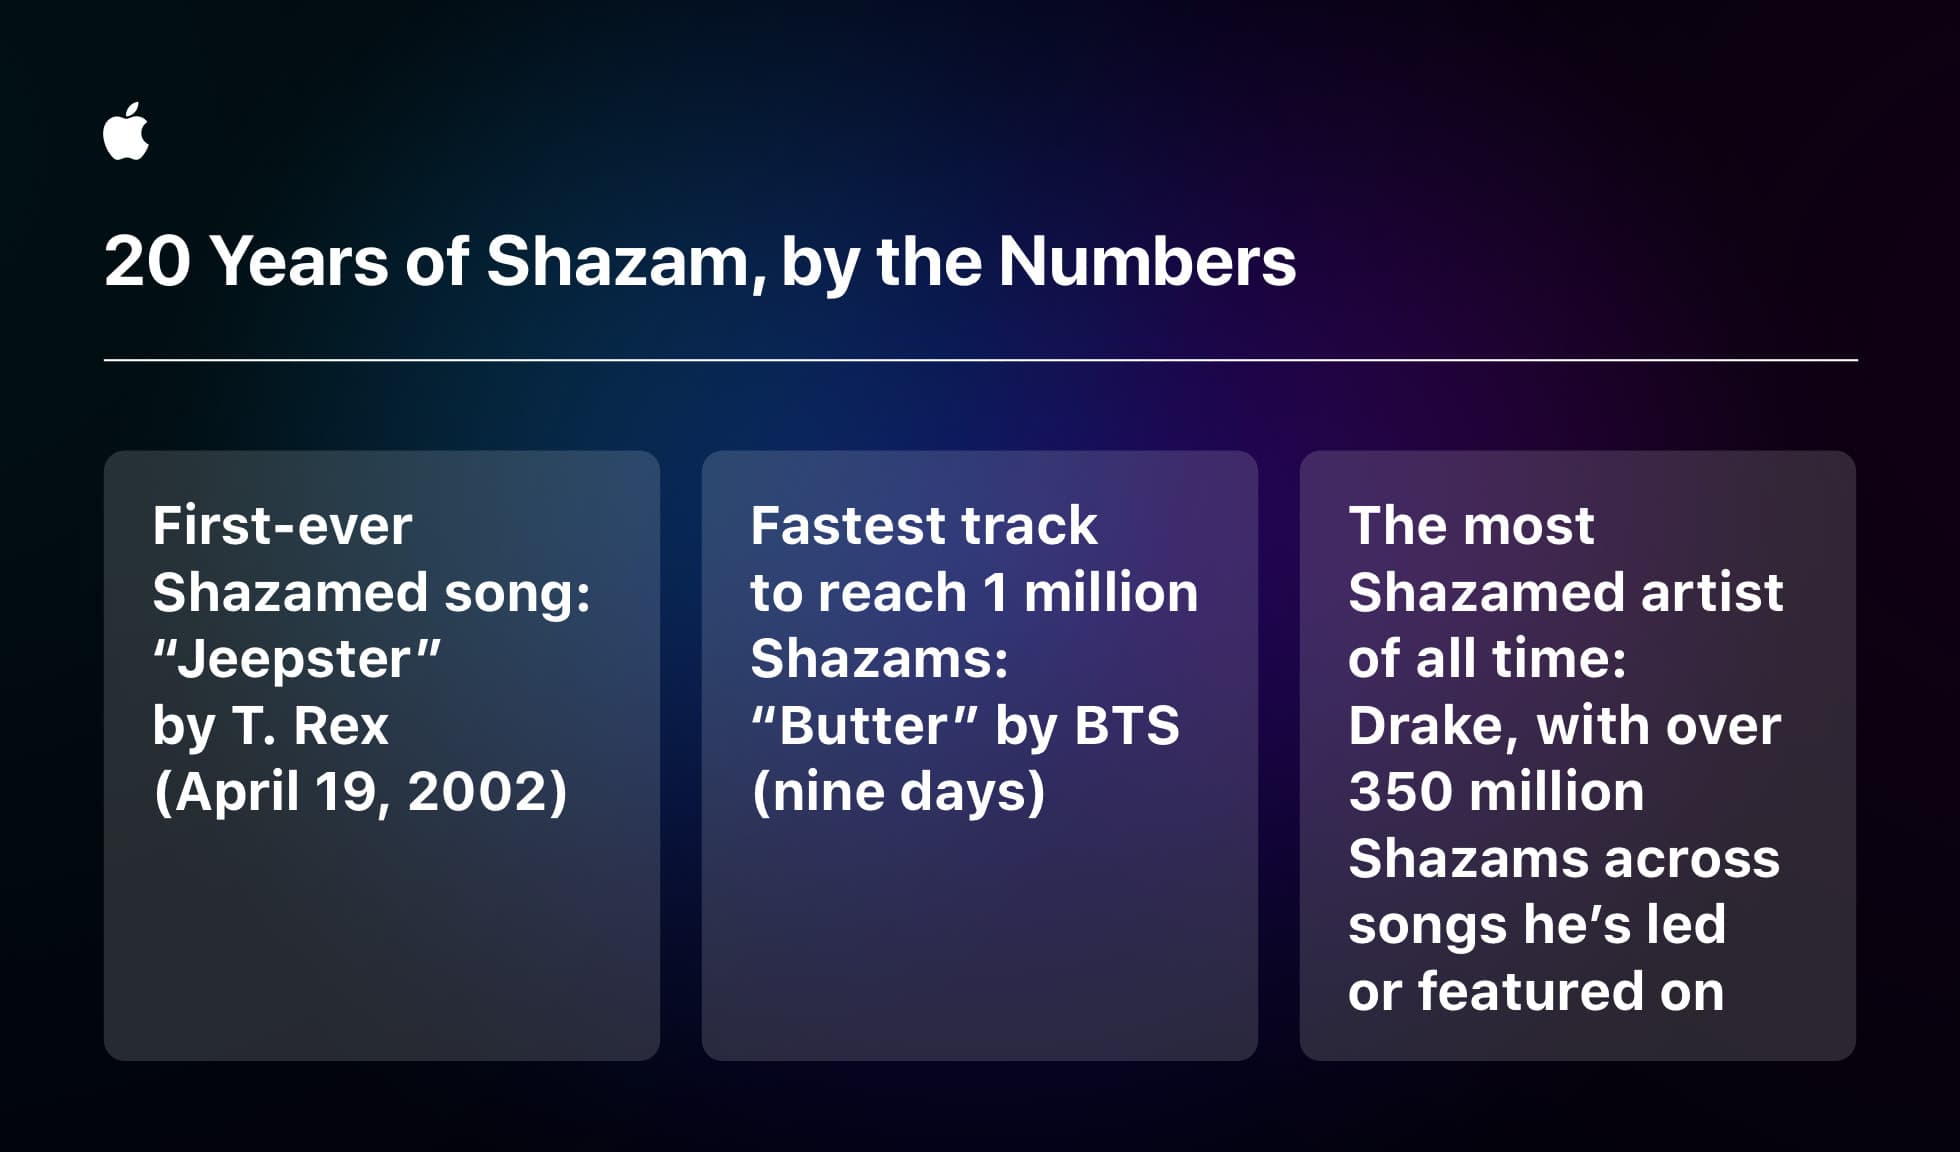 Echa un vistazo a algunos de los números clave de Shazam.